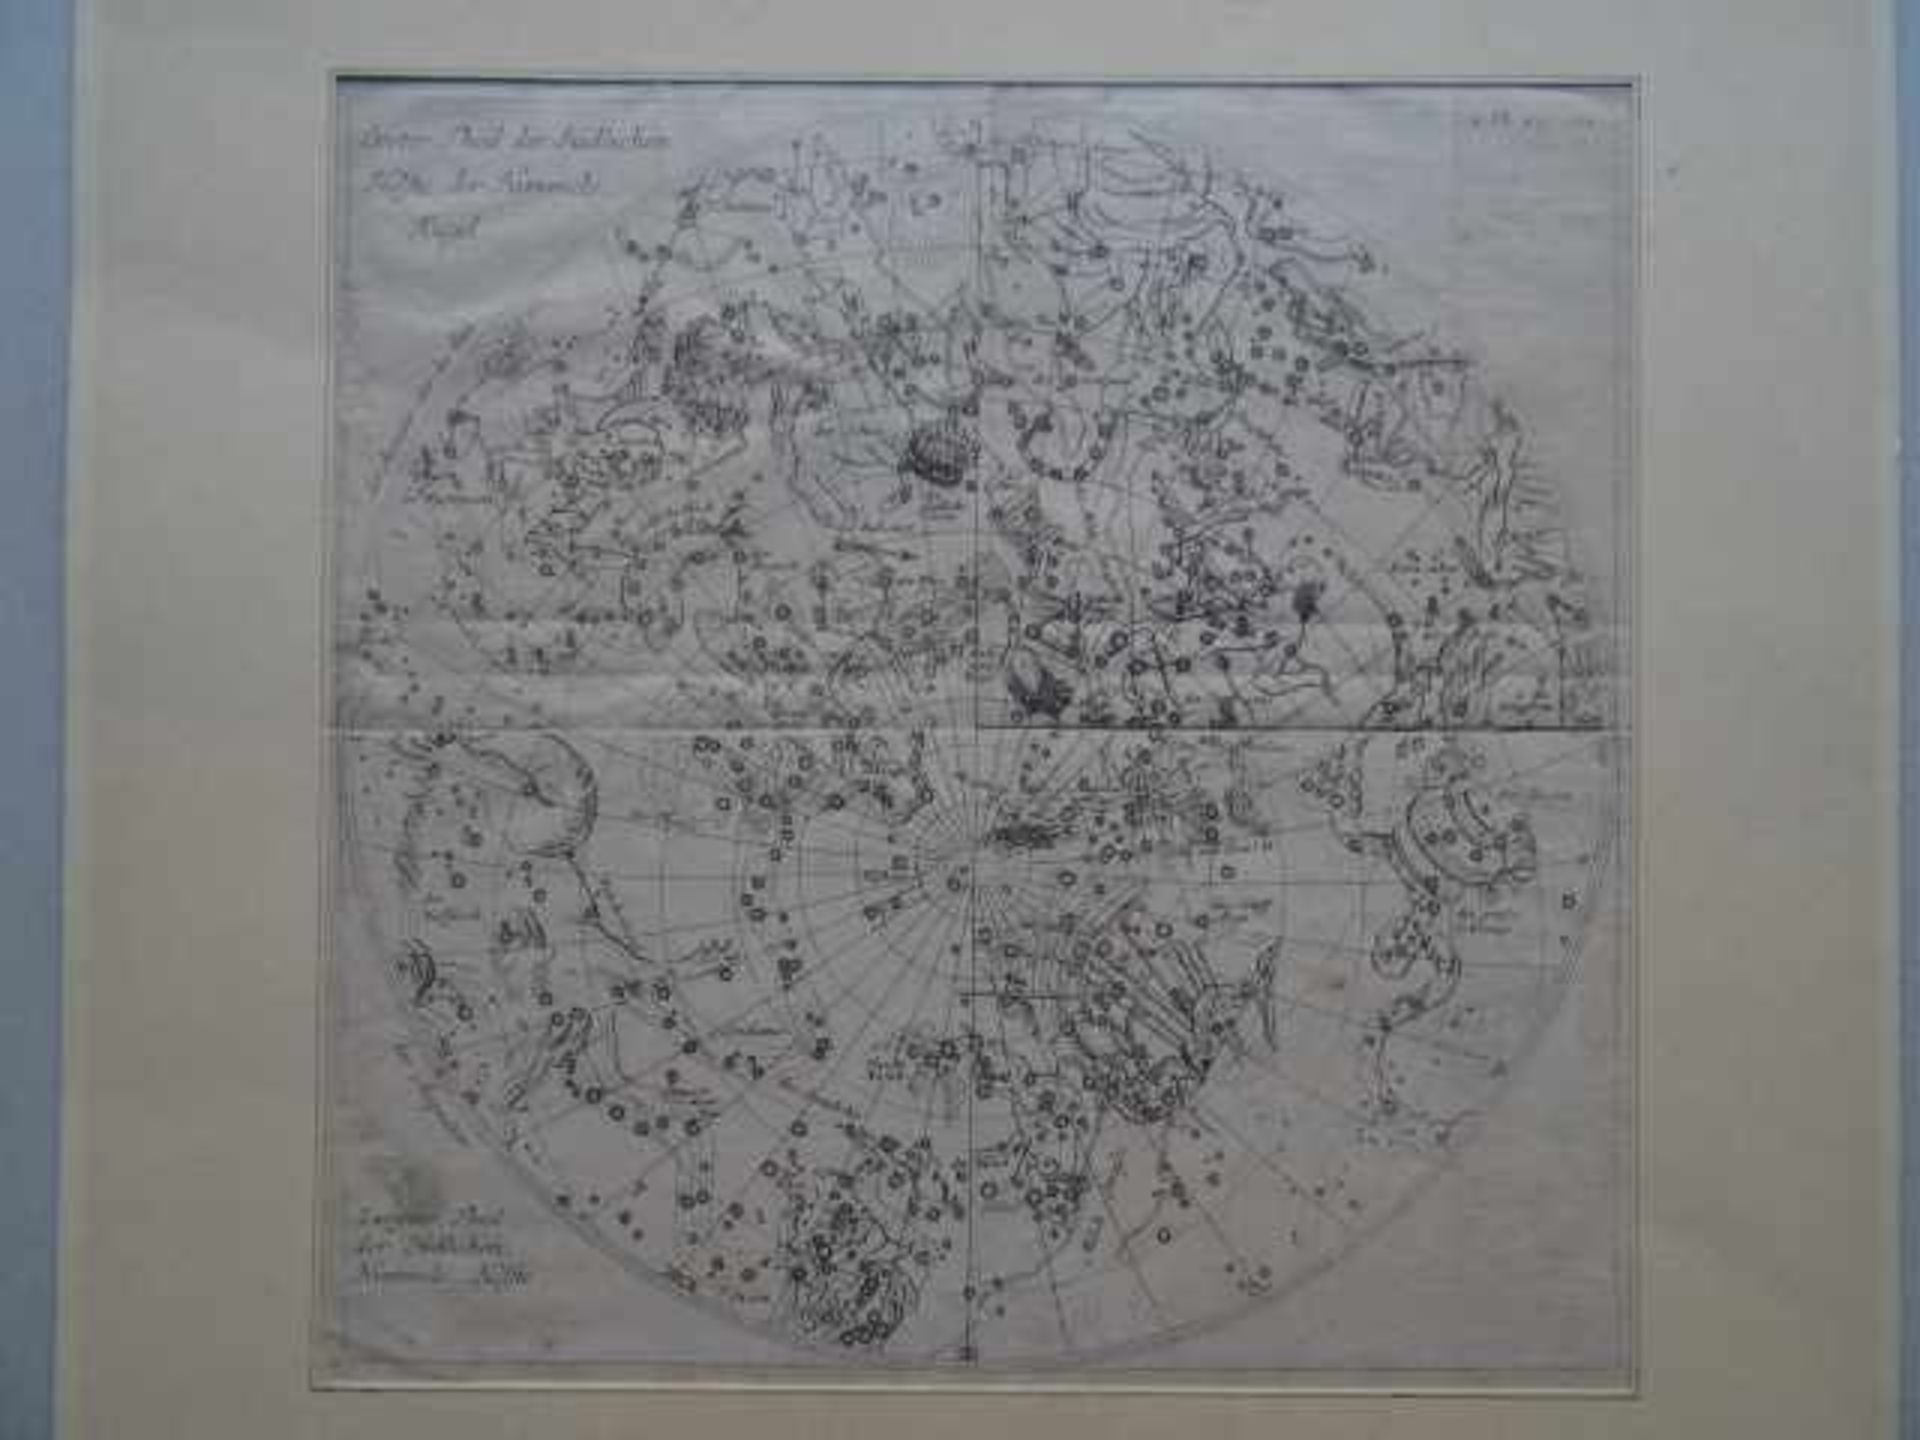 Himmelskarten.- Südliche Helfte der Himmels-Kugel. Kupferstich um 1780. 28 x 28 cm. Oben rechts